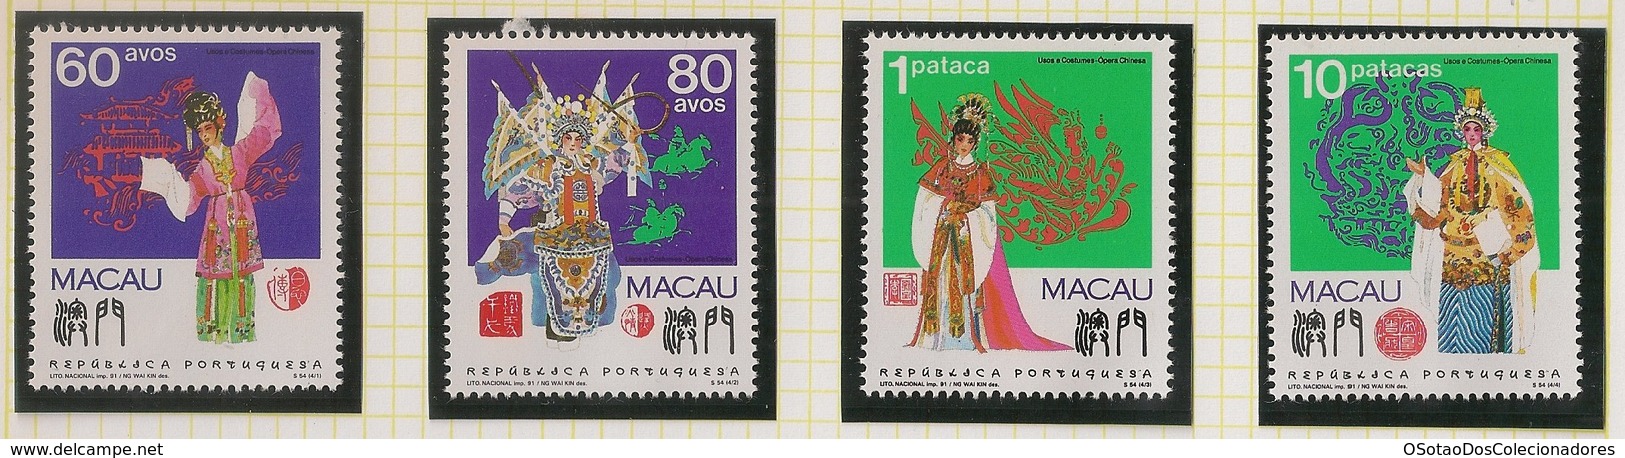 Macau Portugal China Chine 1991 - Usos E Costumes - Opera Chinesa - Chinese Opera - Set Complete - MNH/Neuf - Neufs